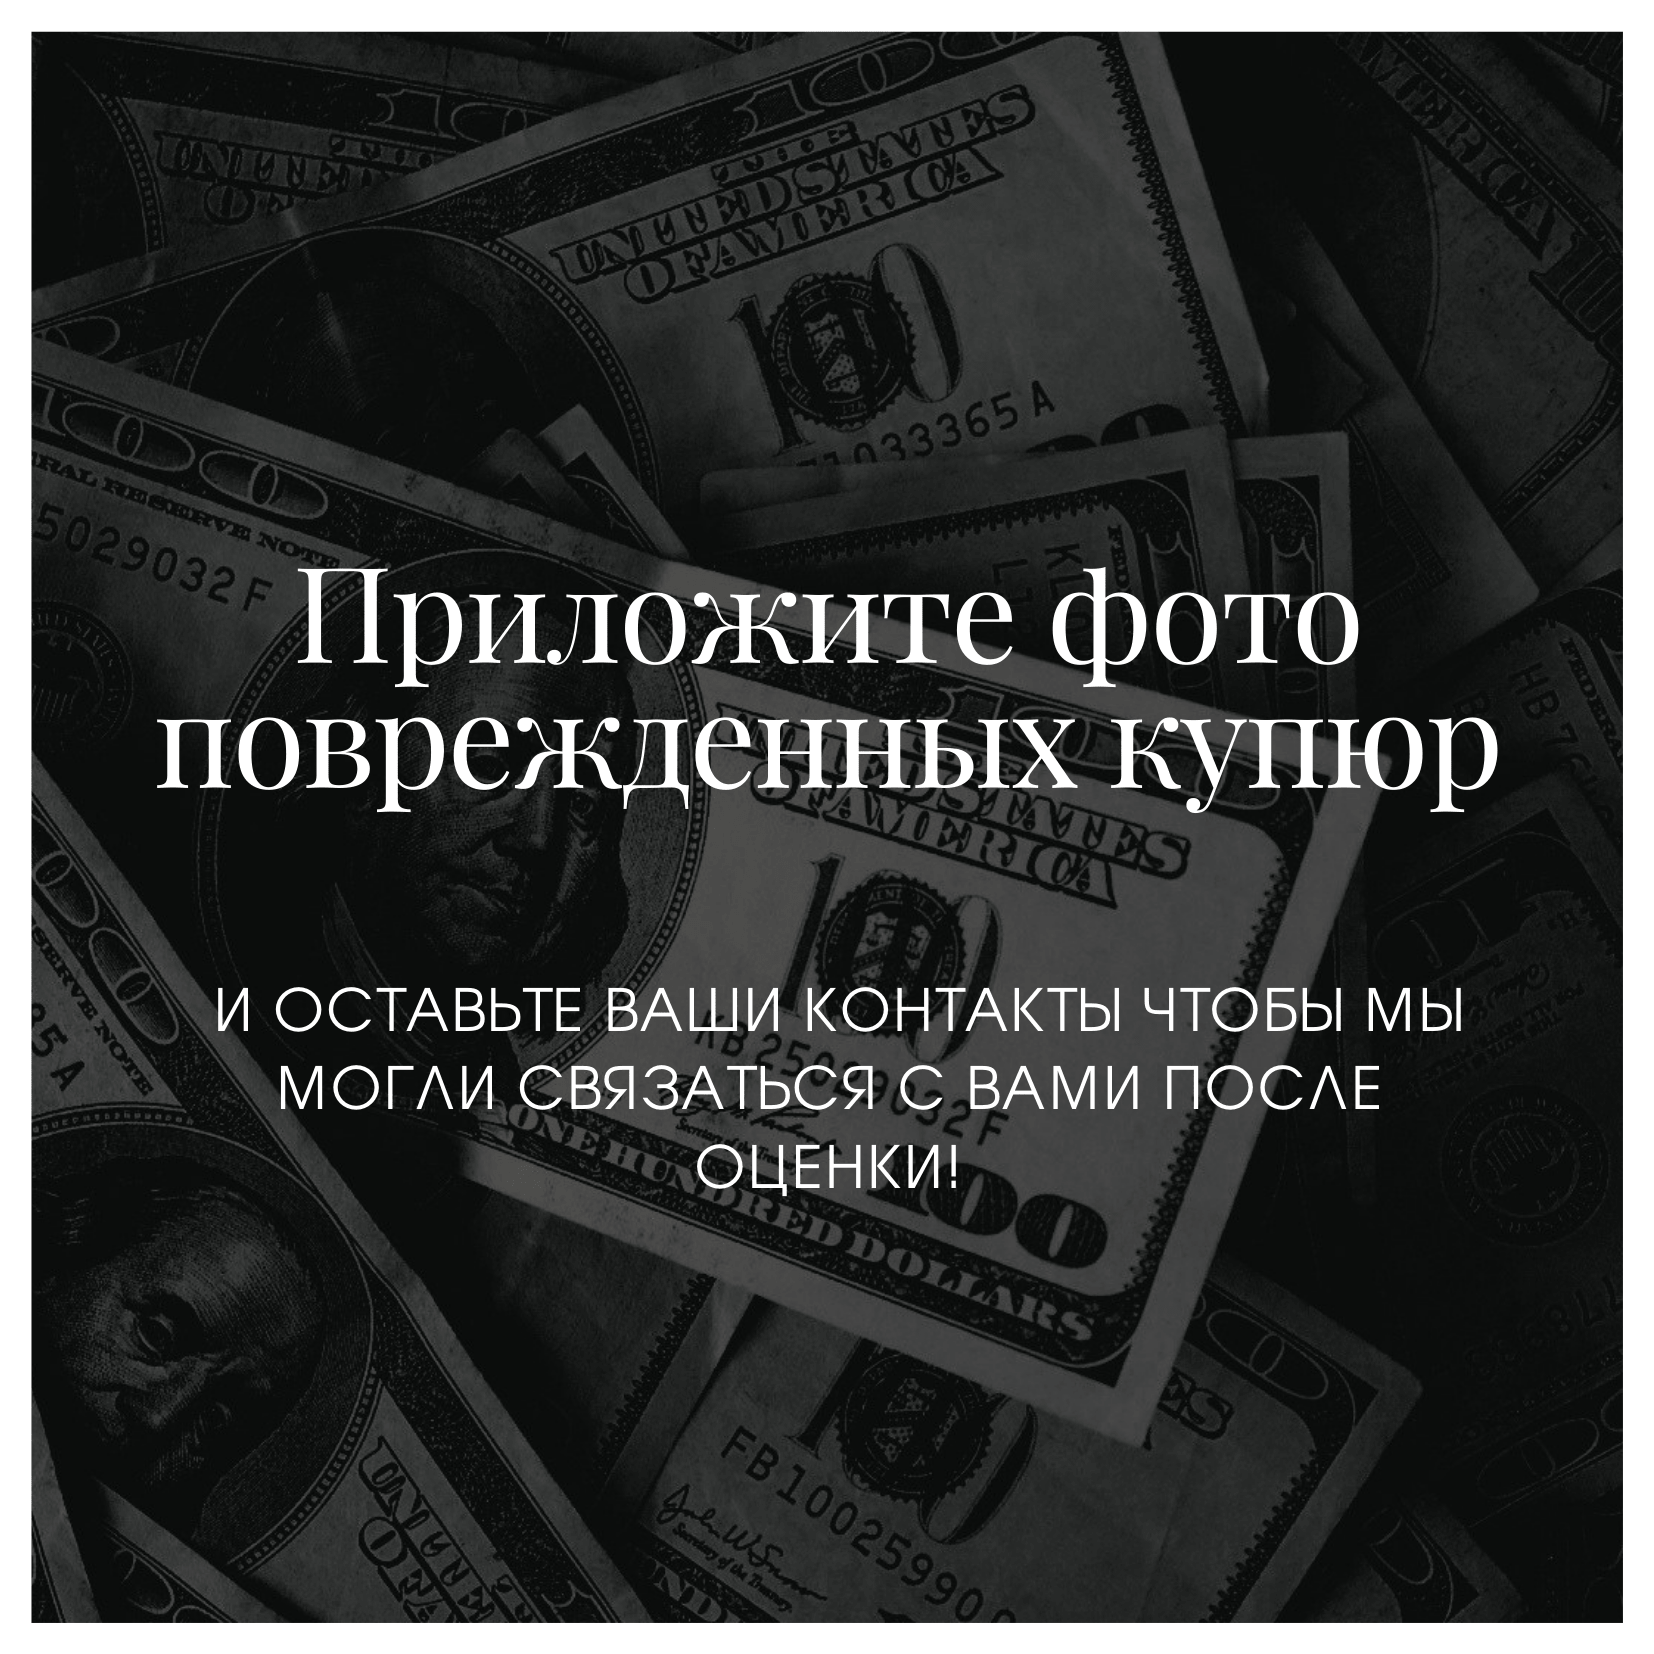 Обмен валют в москве ближайший обмен валюты на 16 12